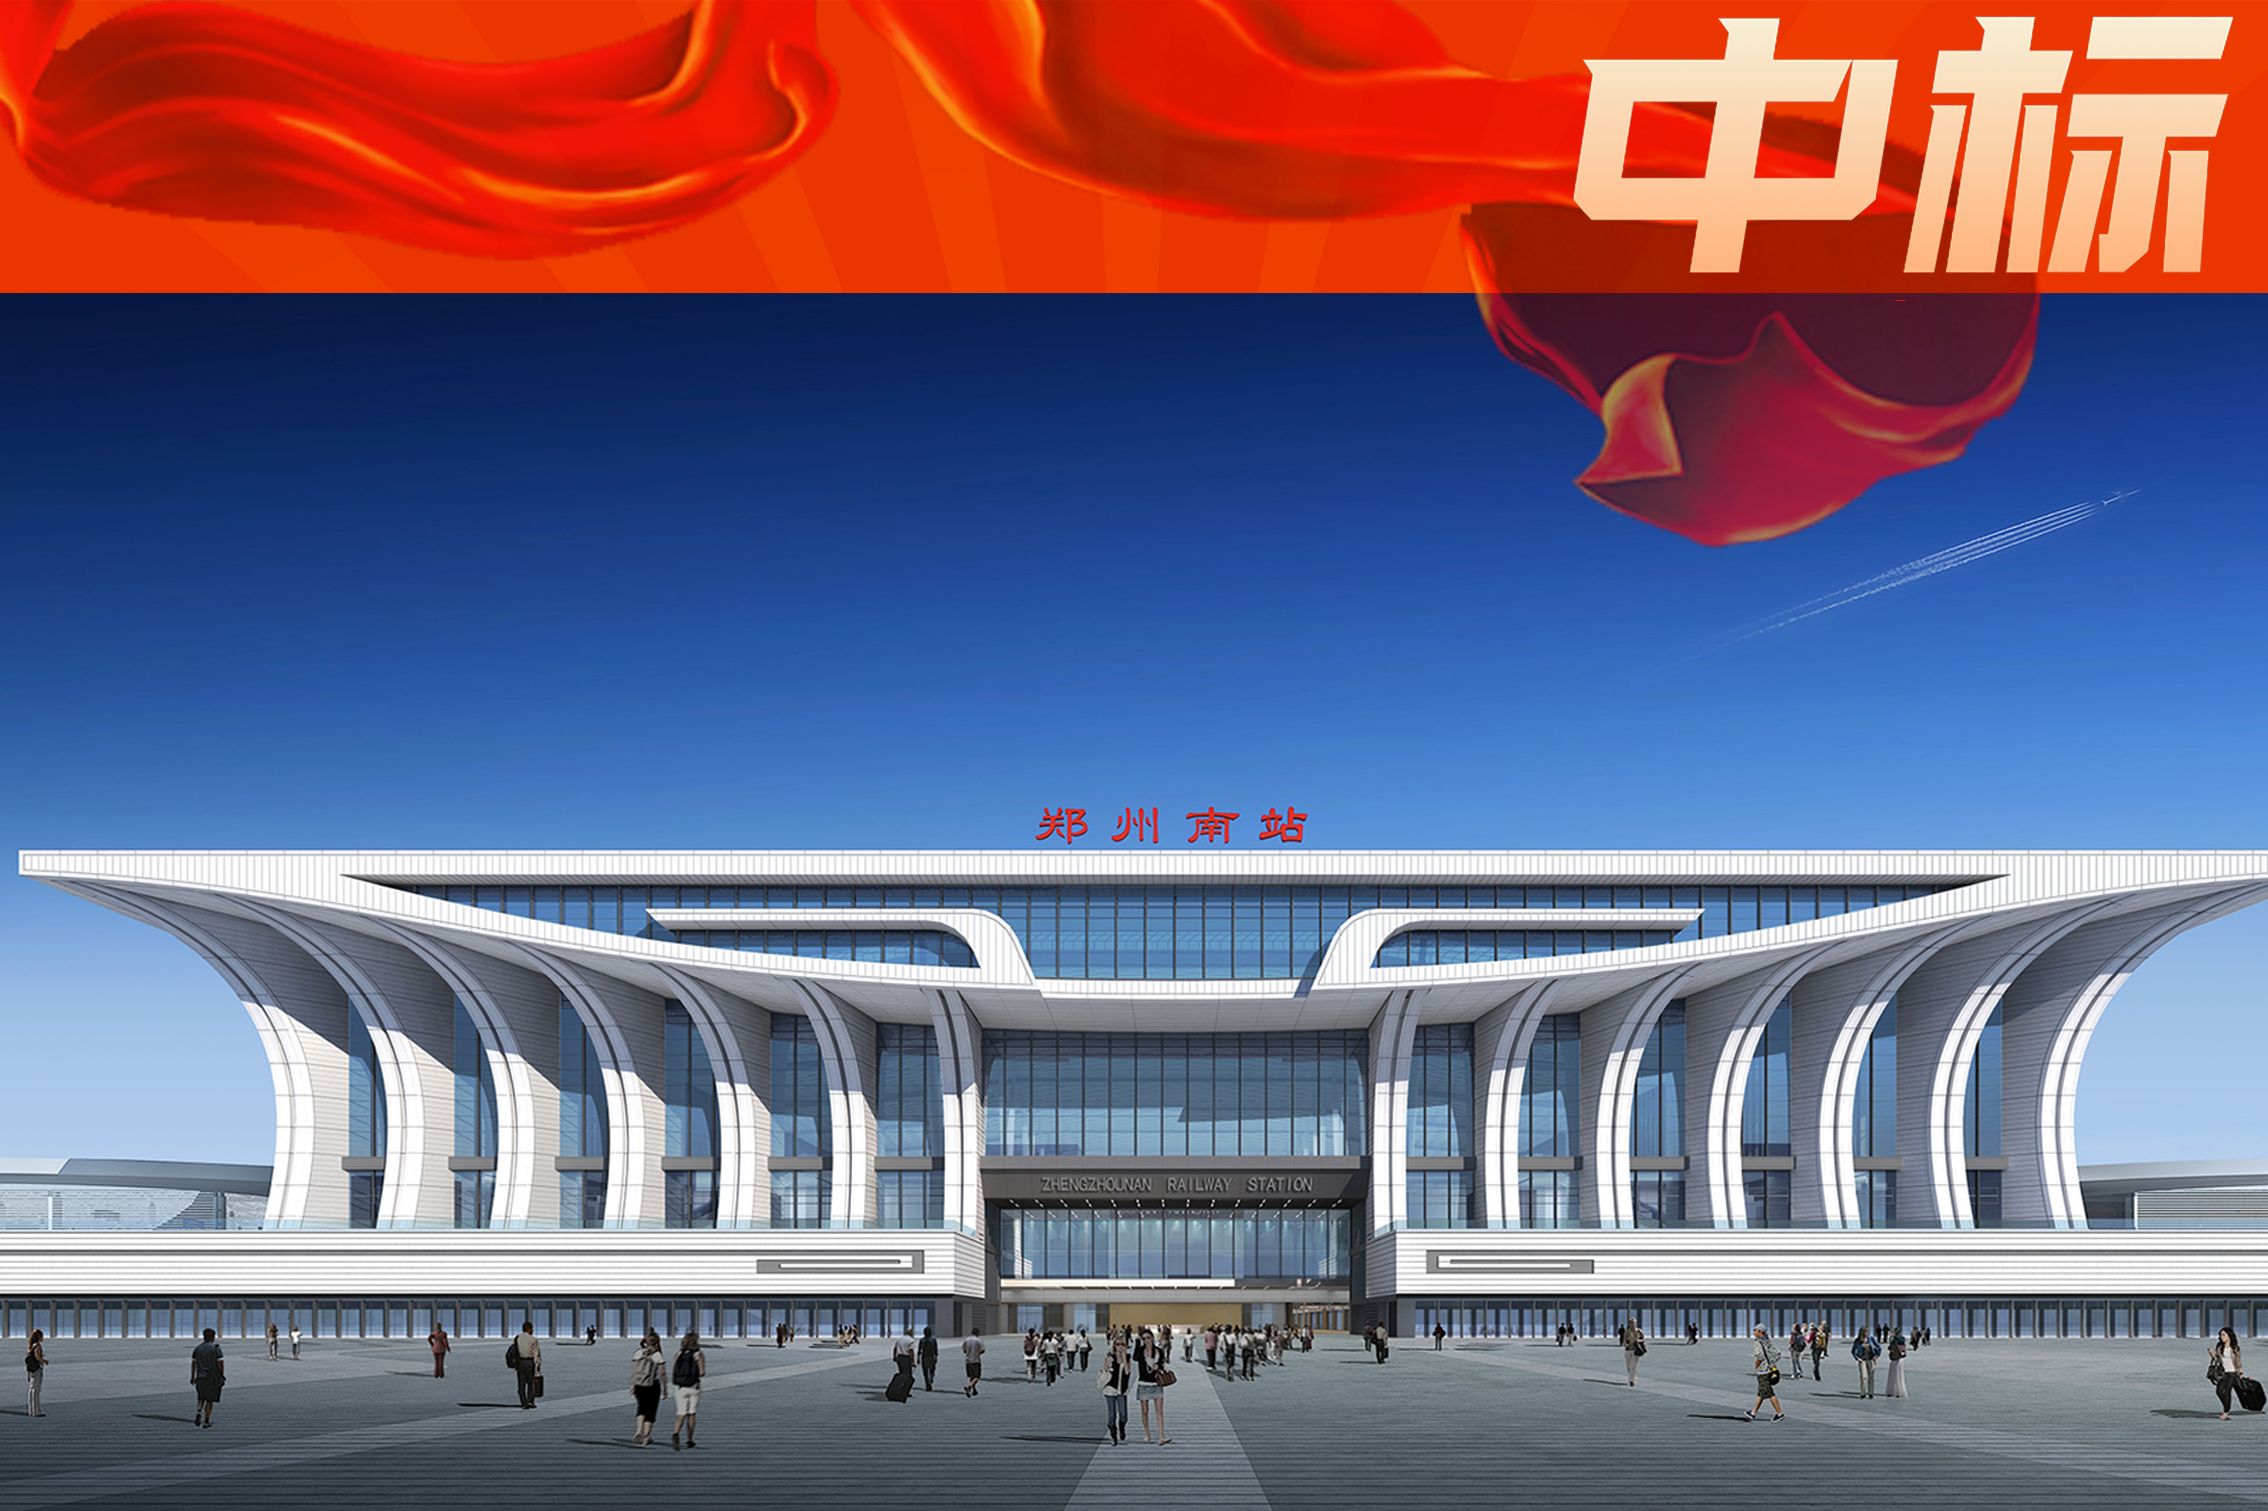 中建深裝幕墻分公司中標亞洲最大高鐵站之一——鄭州高鐵南站幕墻專業分包工程